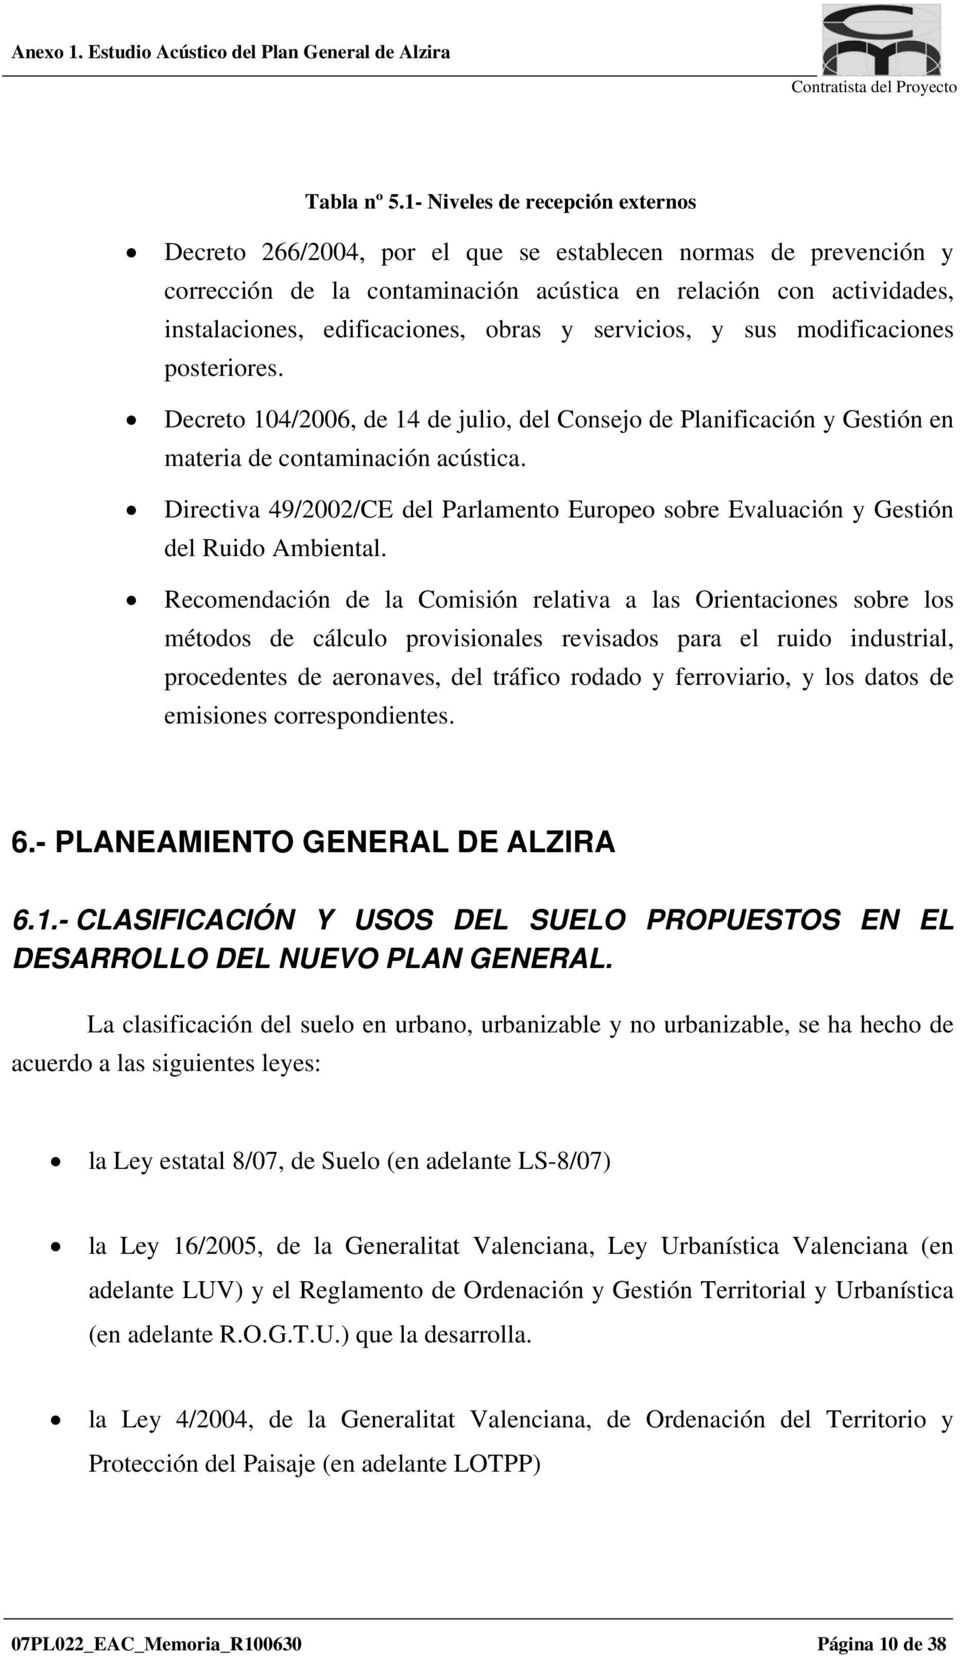 obras y servicios, y sus modificaciones posteriores. Decreto 104/2006, de 14 de julio, del Consejo de Planificación y Gestión en materia de contaminación acústica.